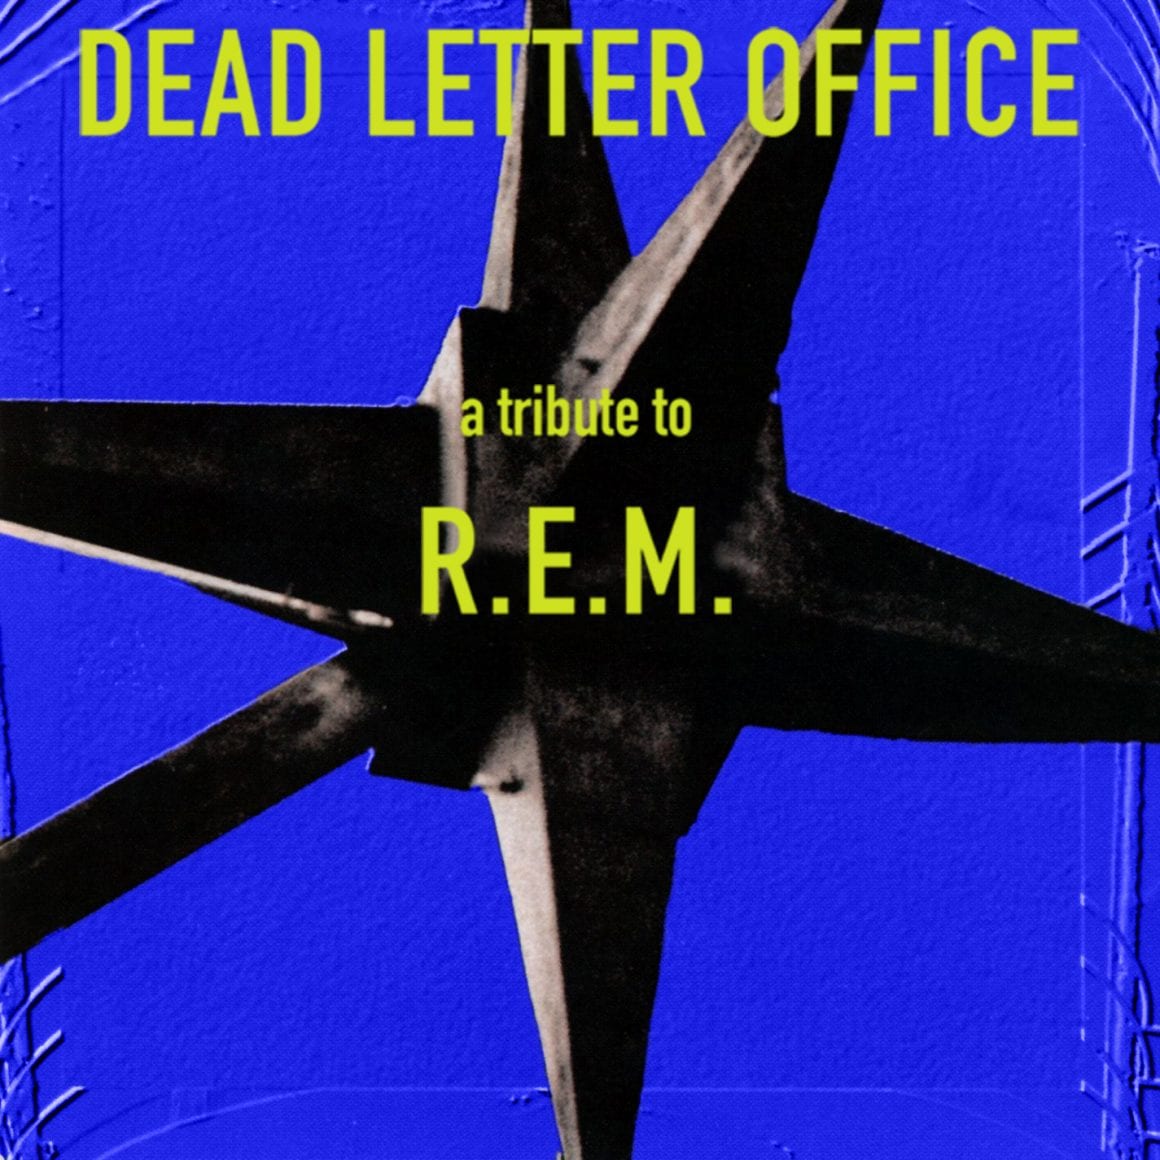 Dead Letter Office, meet R.E.M.'s Peter Buck | Live Music News